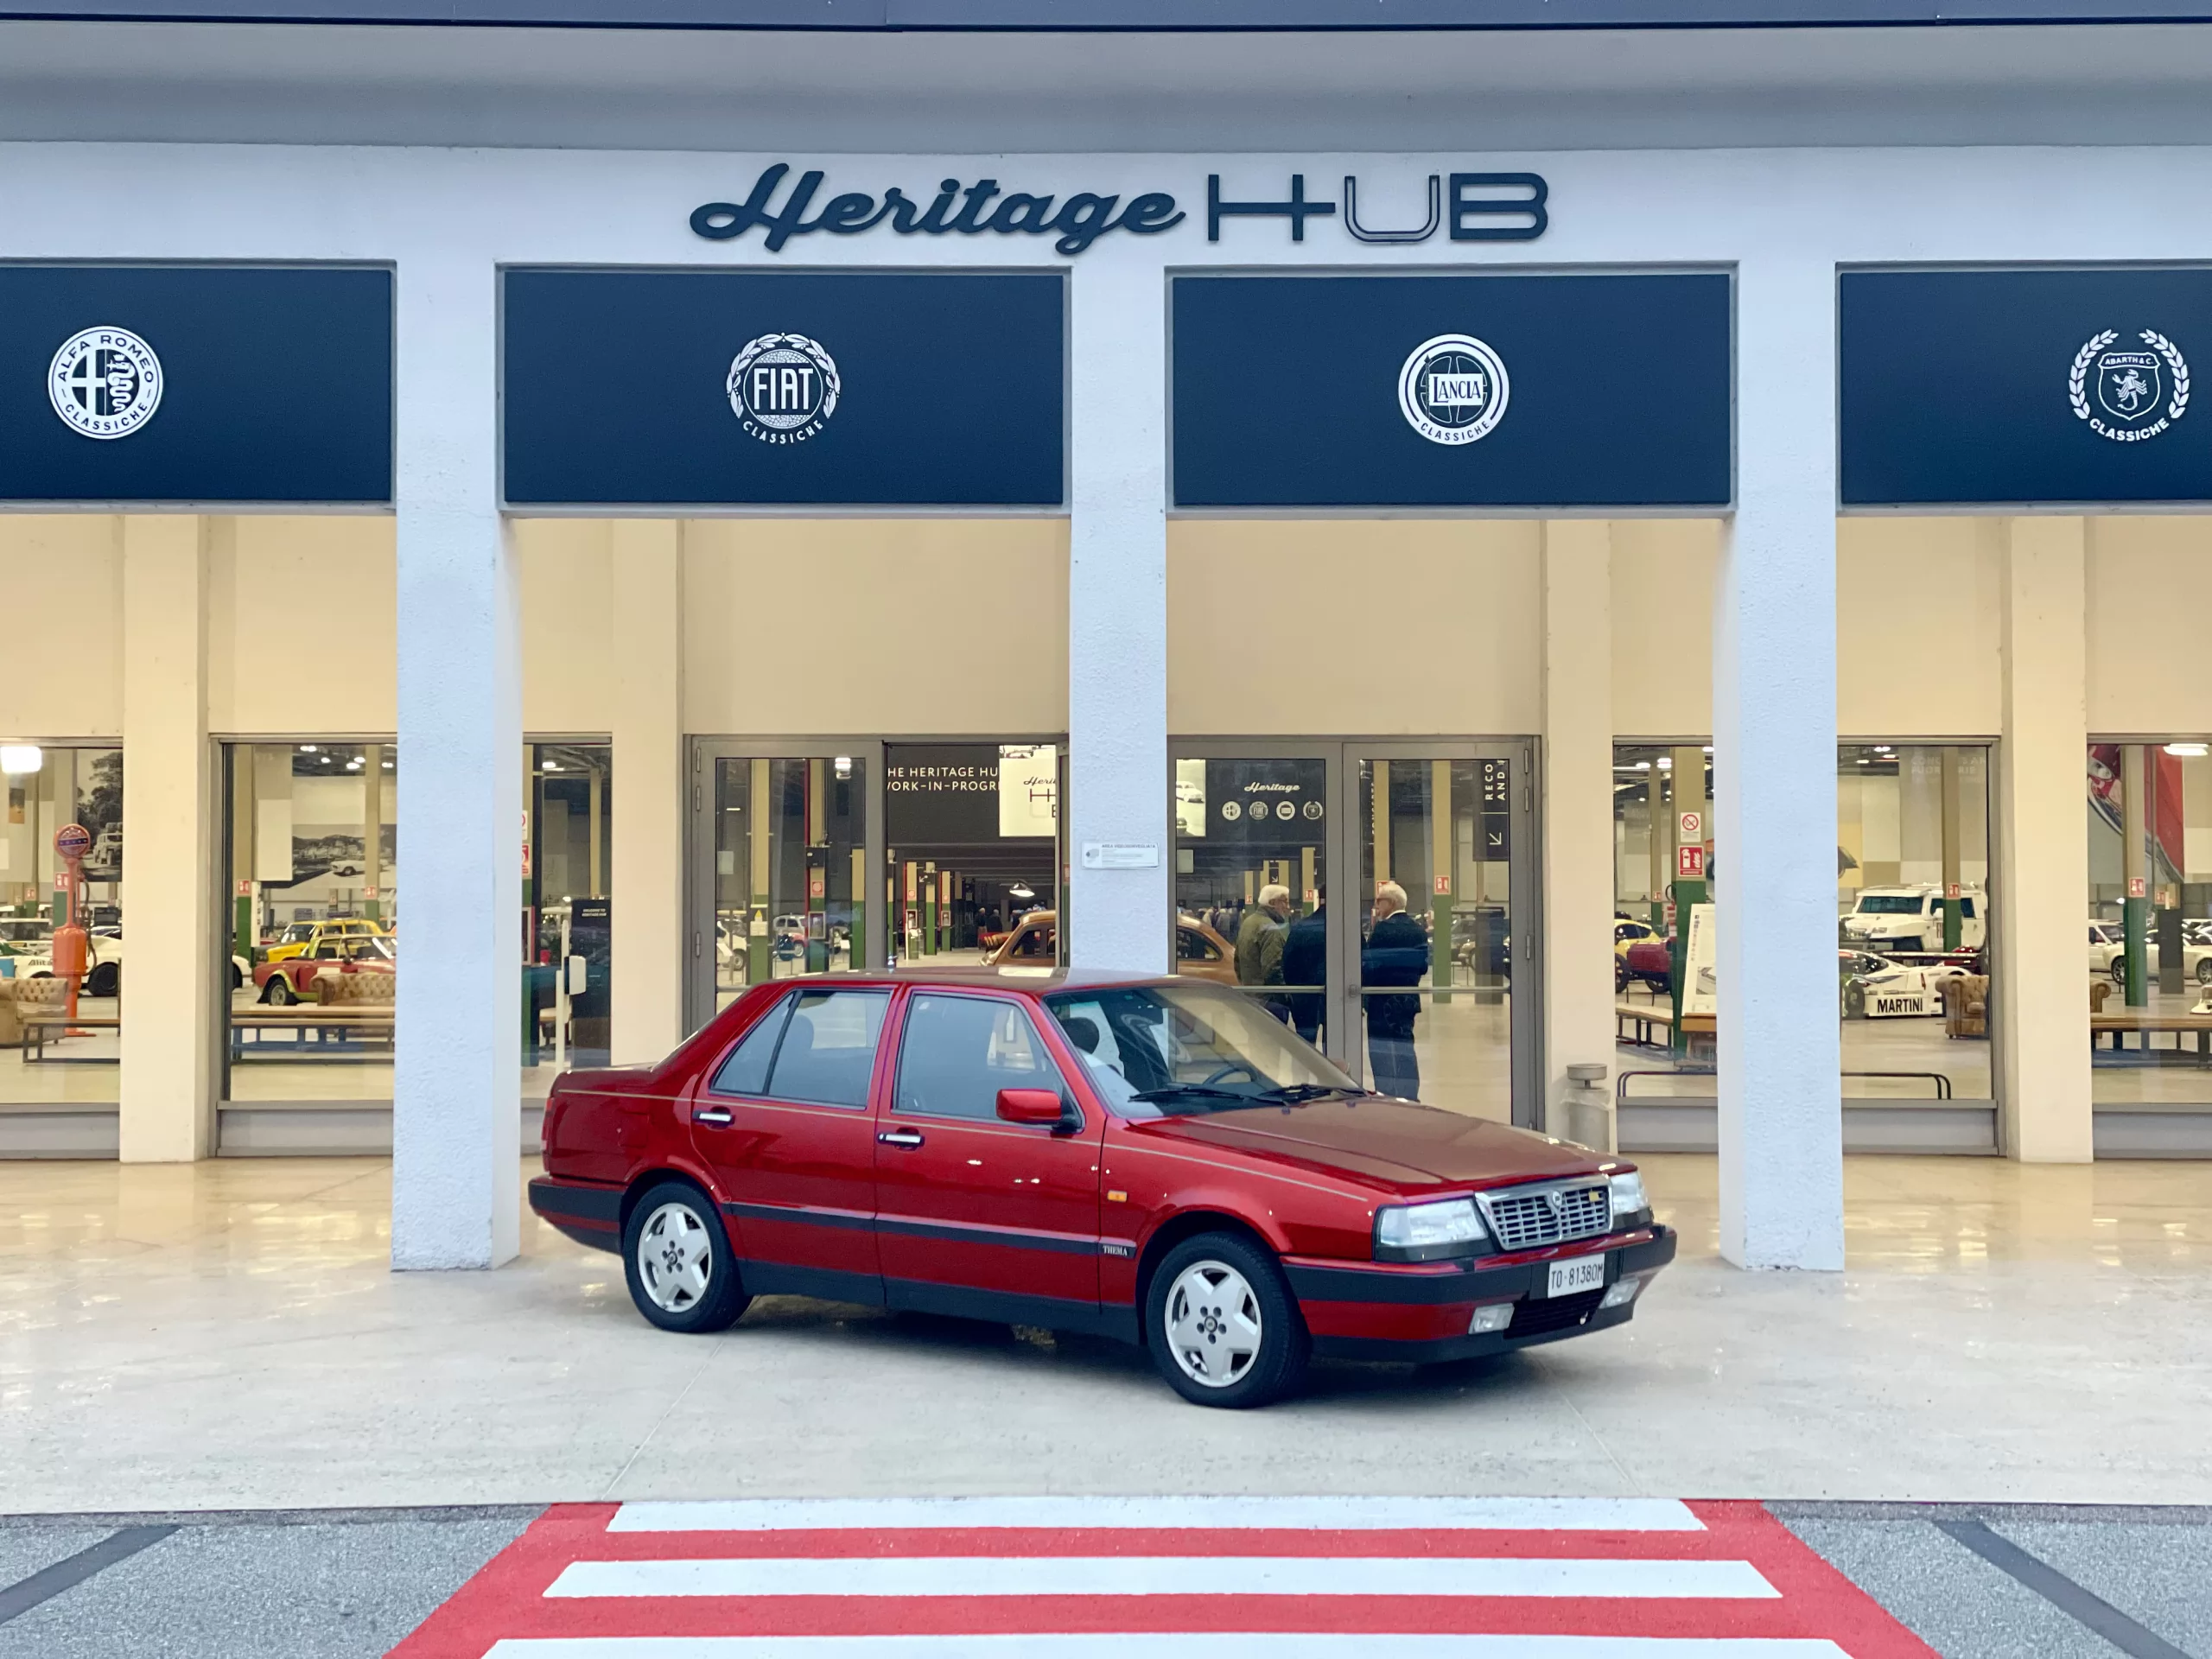 Heritage Hub a Torino Celebra il Successo della Lancia Thema: Un Viaggio nel Tempo nell’Iconica Storia dell’Automobilismo Italiano